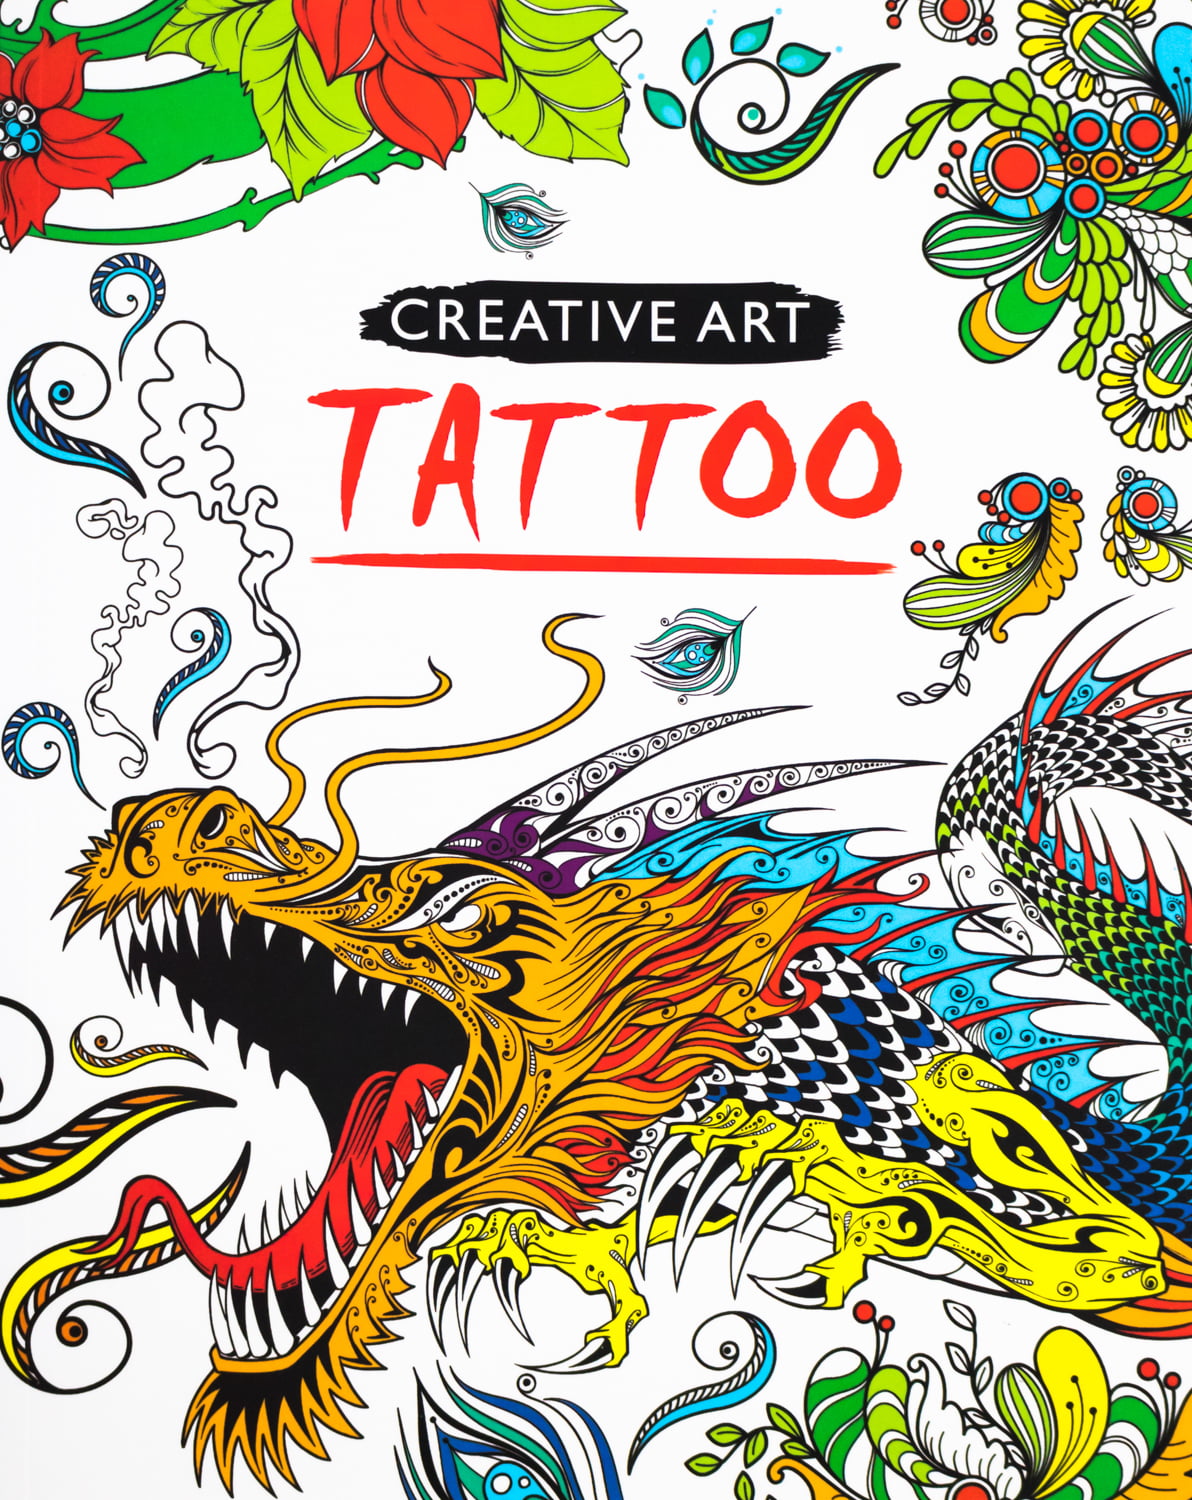 Download Tattoo Coloring Book - Walmart.com - Walmart.com